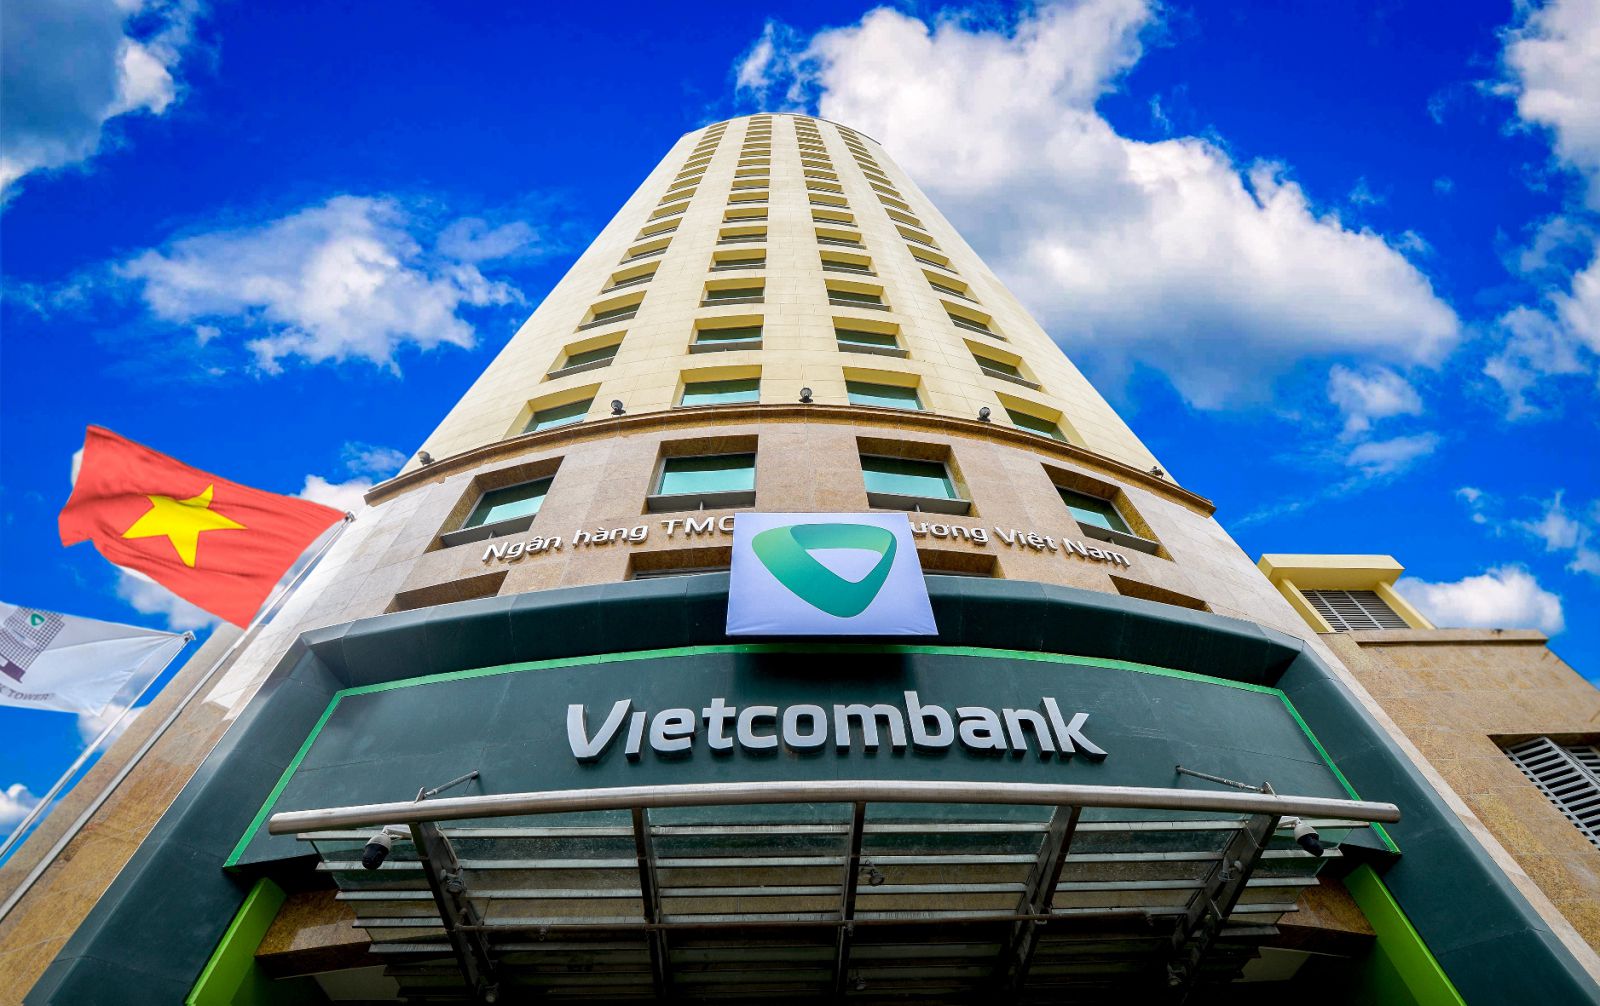 Với mức giá 99.900đ/cổ phiếu và 97.800đ/cổ phiếu, cổ phiếu VCB của Vietcombank đã trở thành cổ phiếu có mức vốn hóa đứng đầu toàn thị trường chứng khoán Việt Nam, với giá trị vốn hóa là 370.516,86 tỉ đồng.